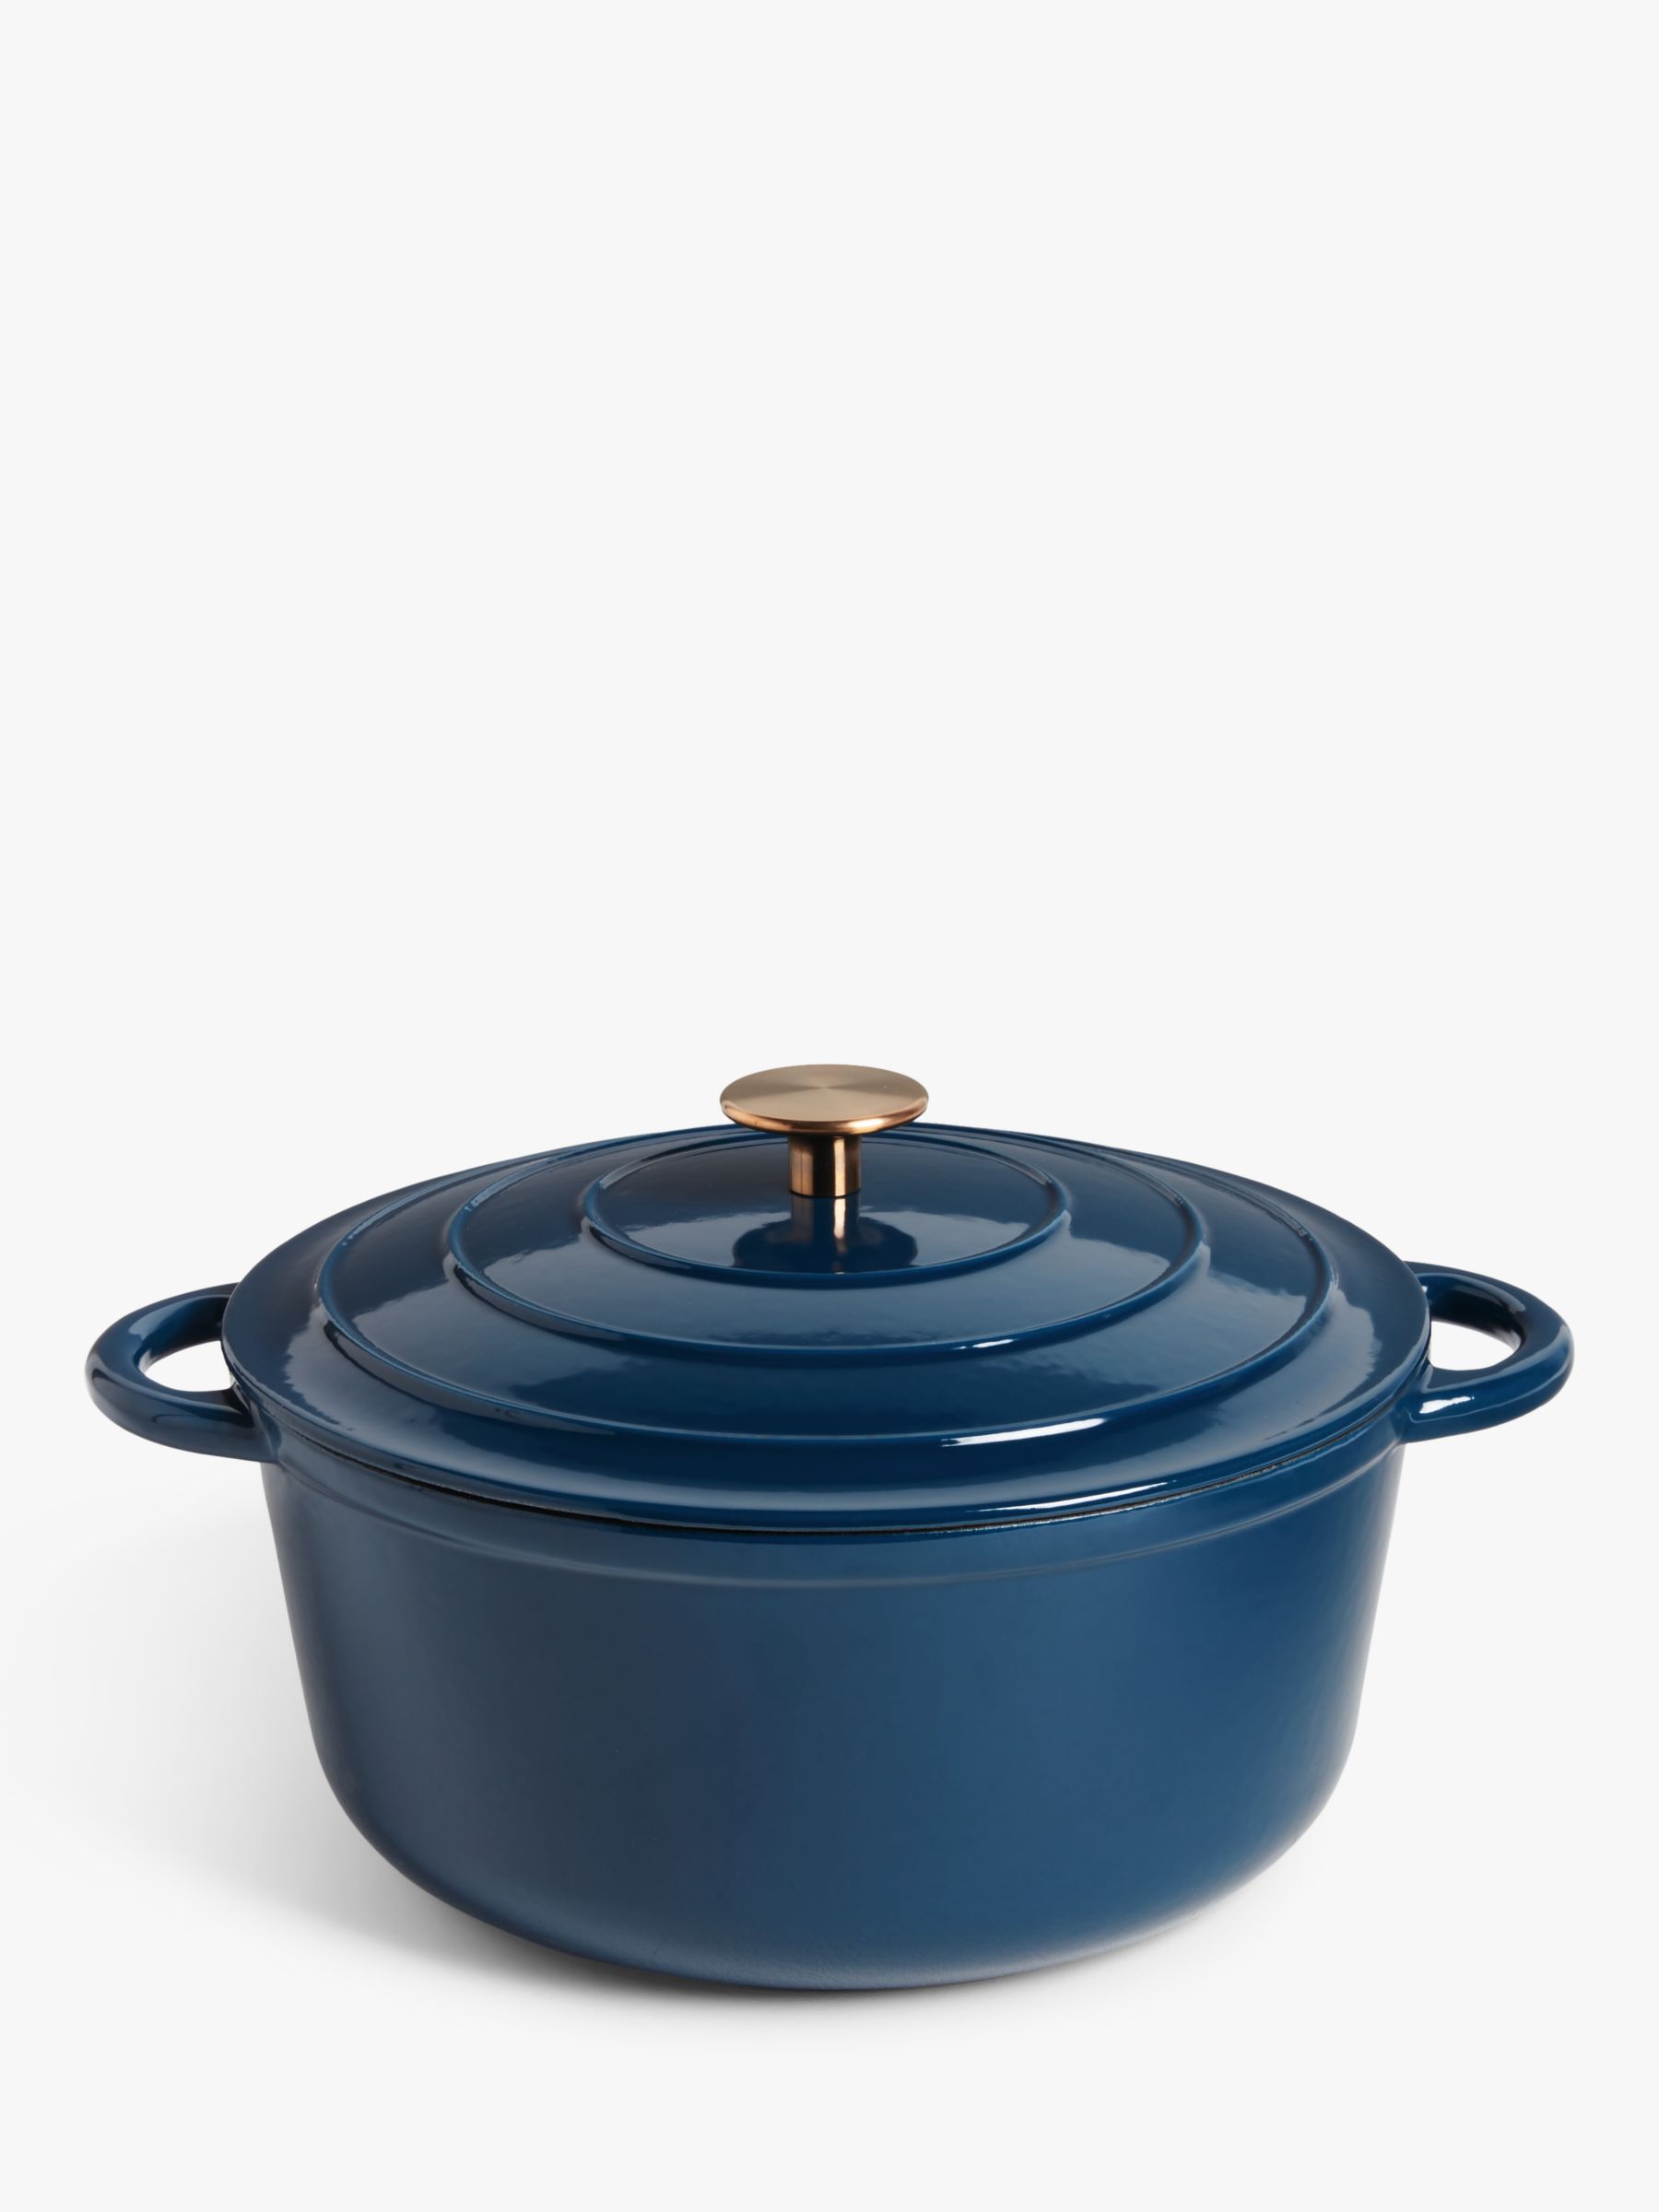 Shallow Casserole Pot with Lid, Cast Iron Enamel Pot, 32CM Paella Pot,  Non-Stick Cooking Pot, Dutch Oven, Cooking Pot (Color : Blue)